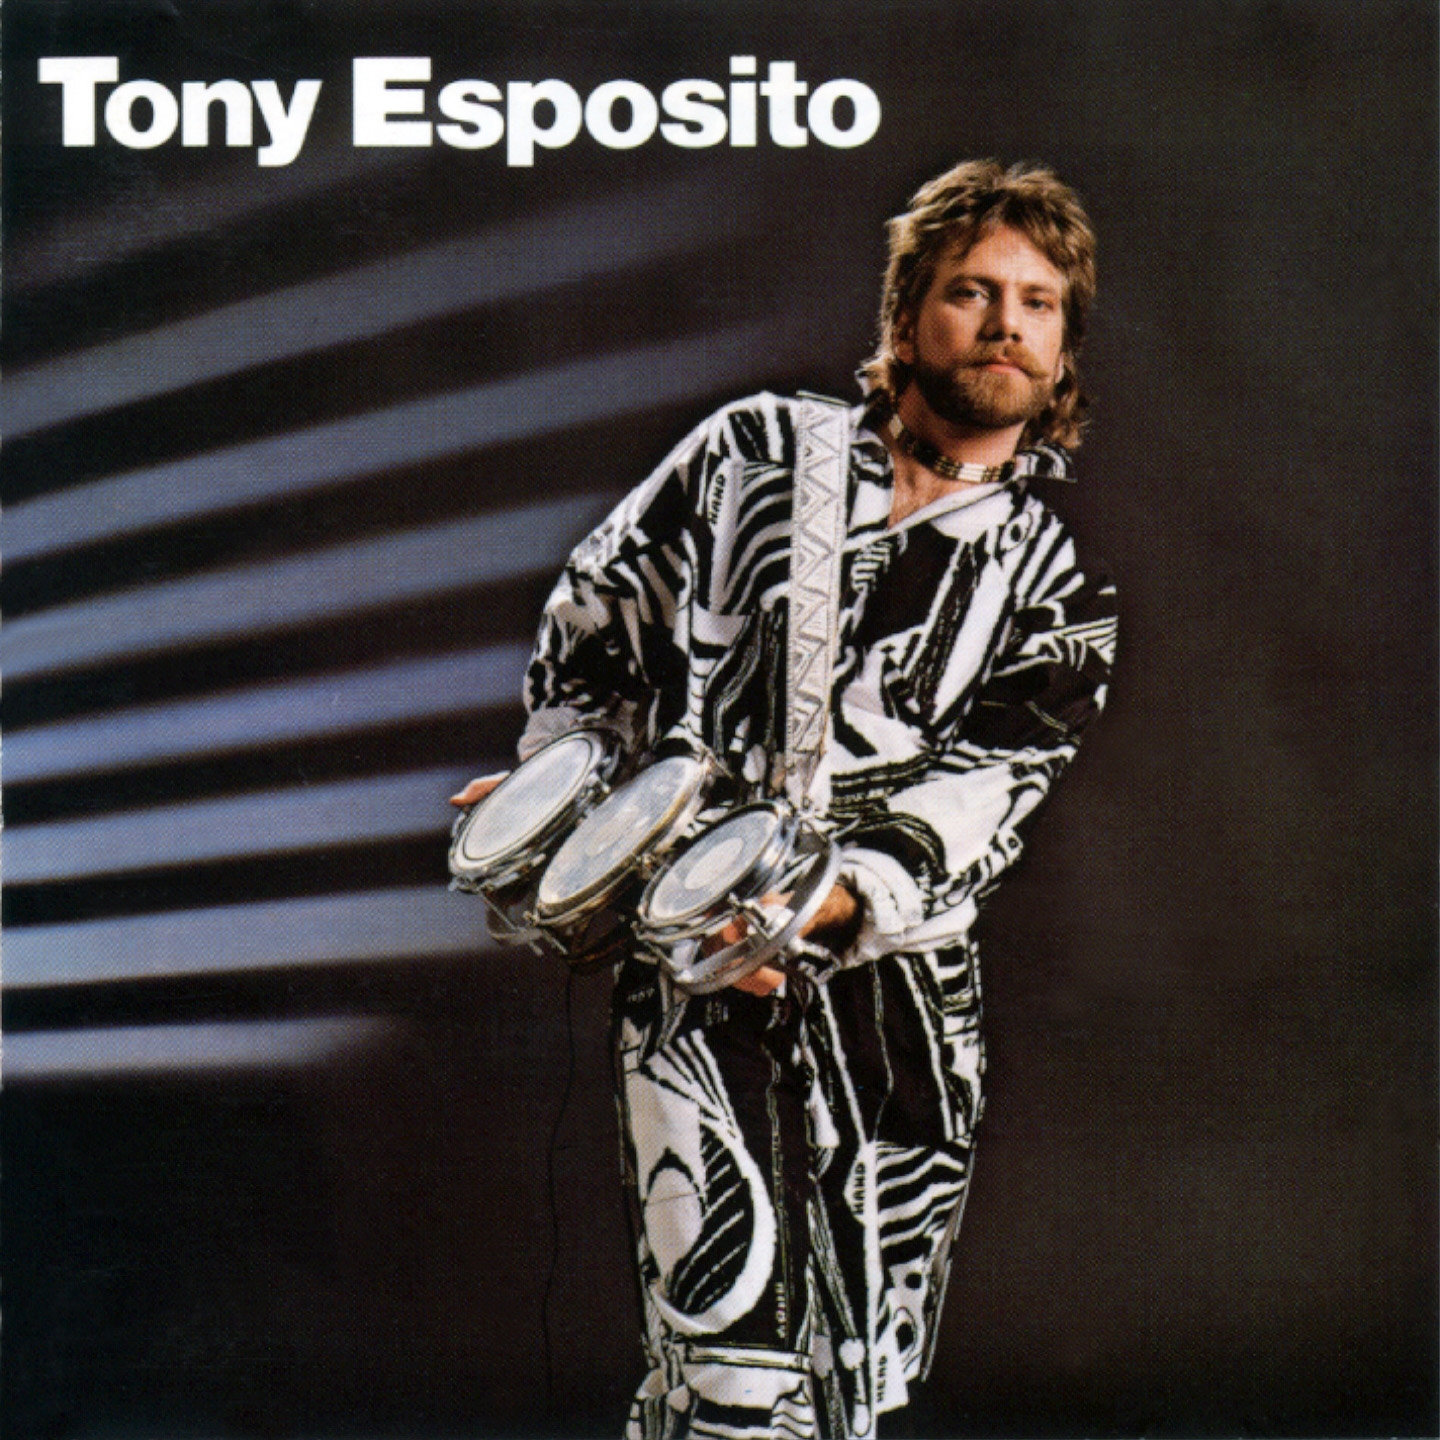 Эспозито де луна. Тони Эспозито. Тони Эспозито фото. Тони Эспозито музыкант. Tony Esposito обложки.